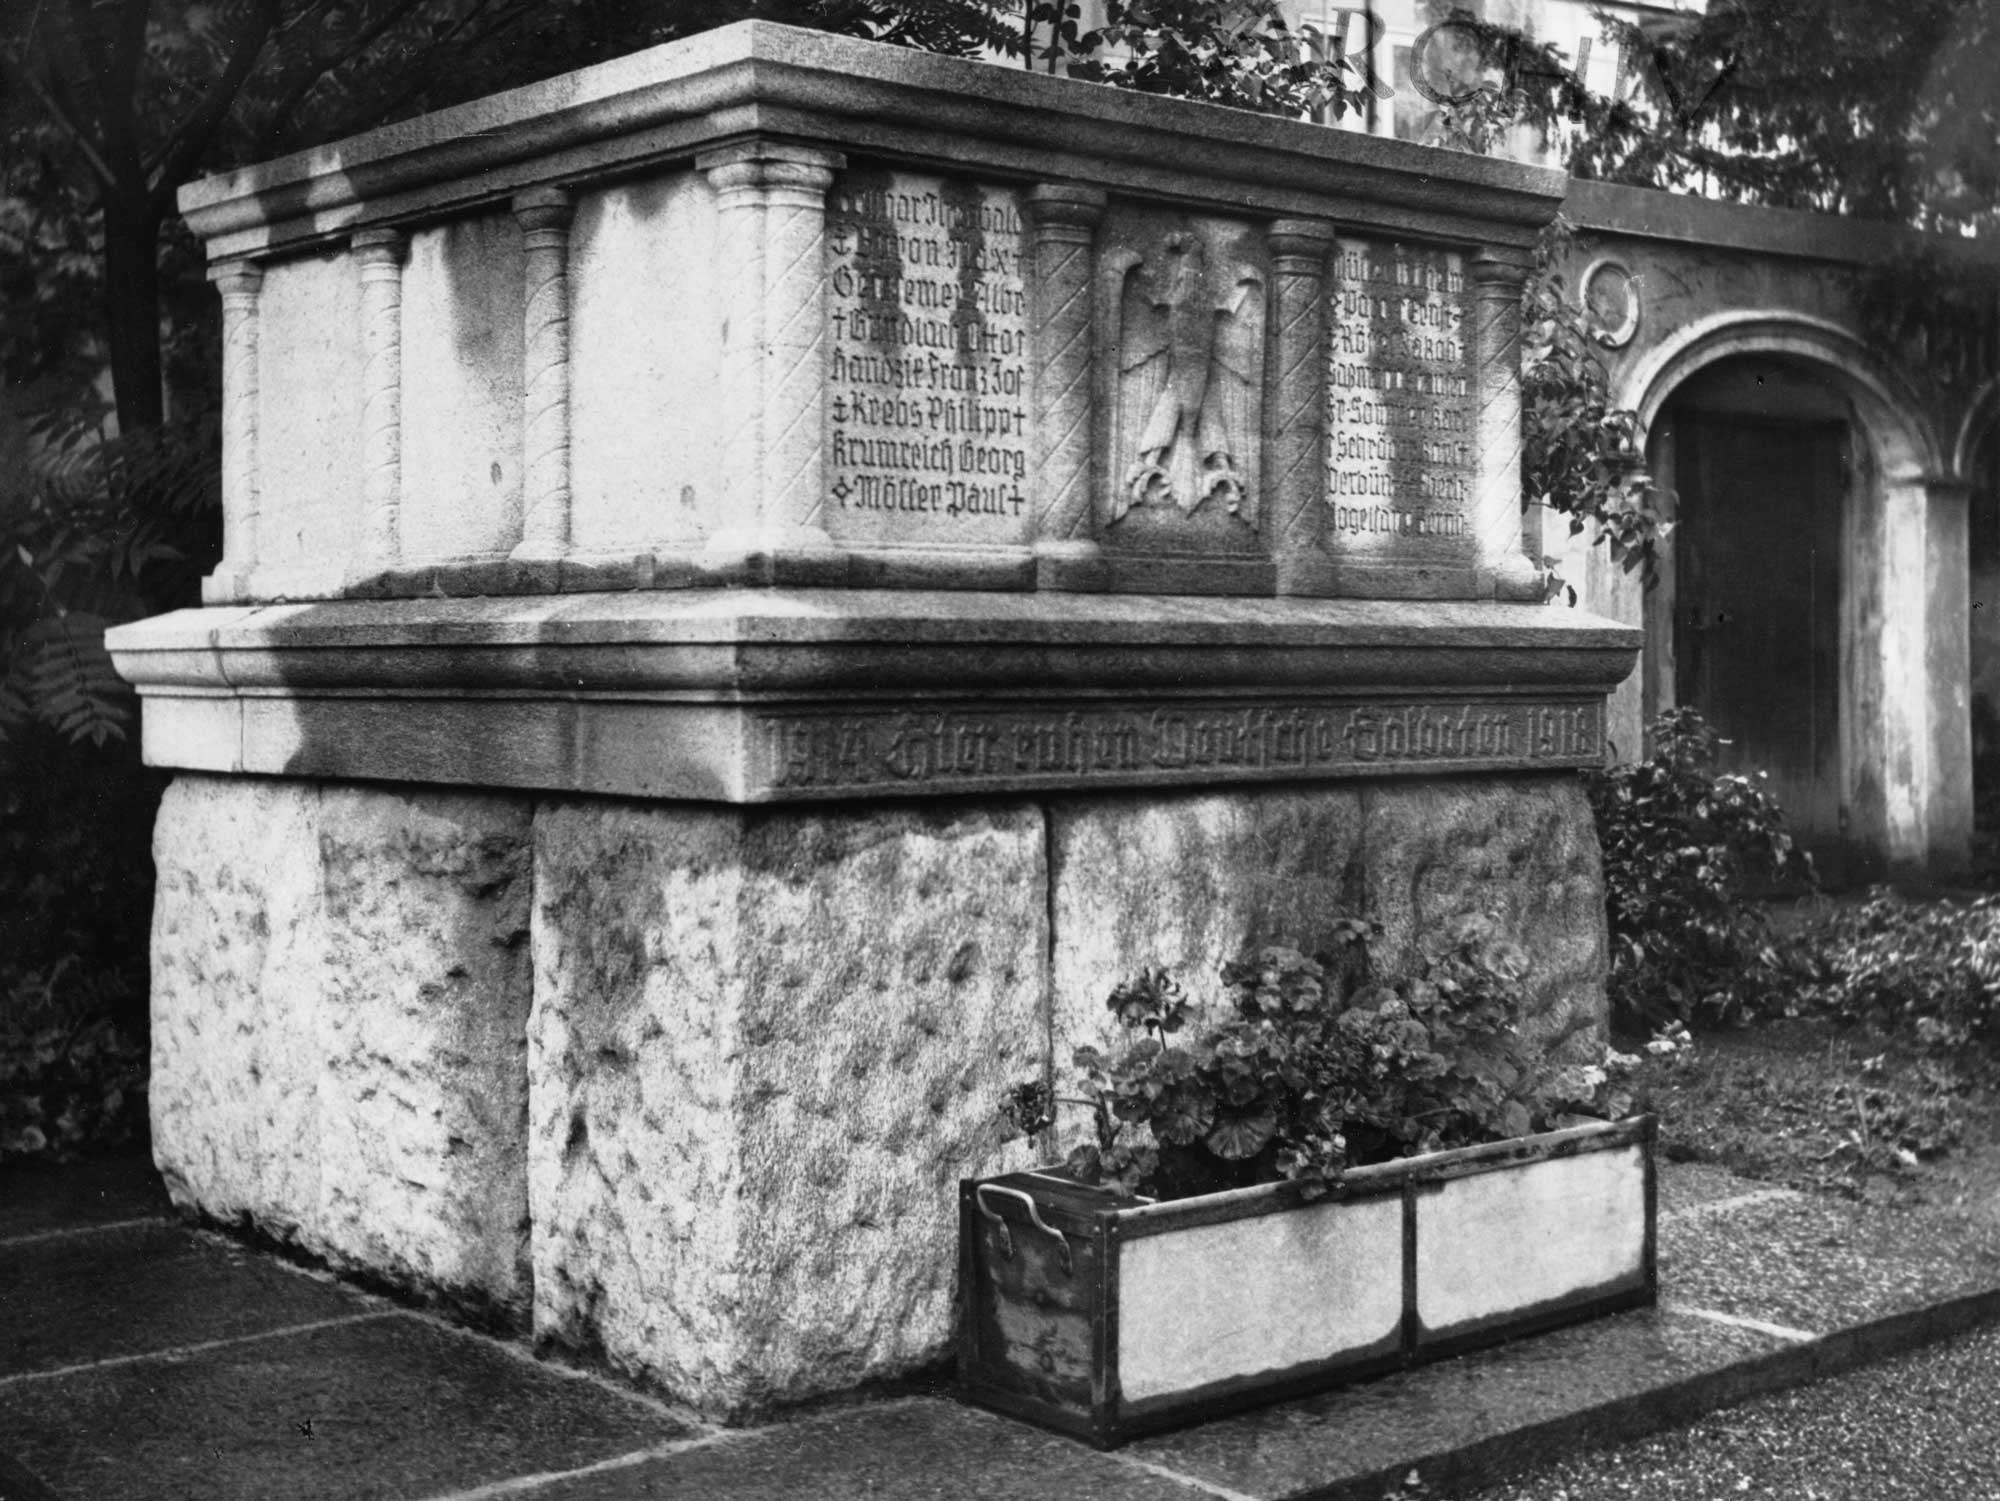 The controversial war graves memorial in a Chur graveyard.